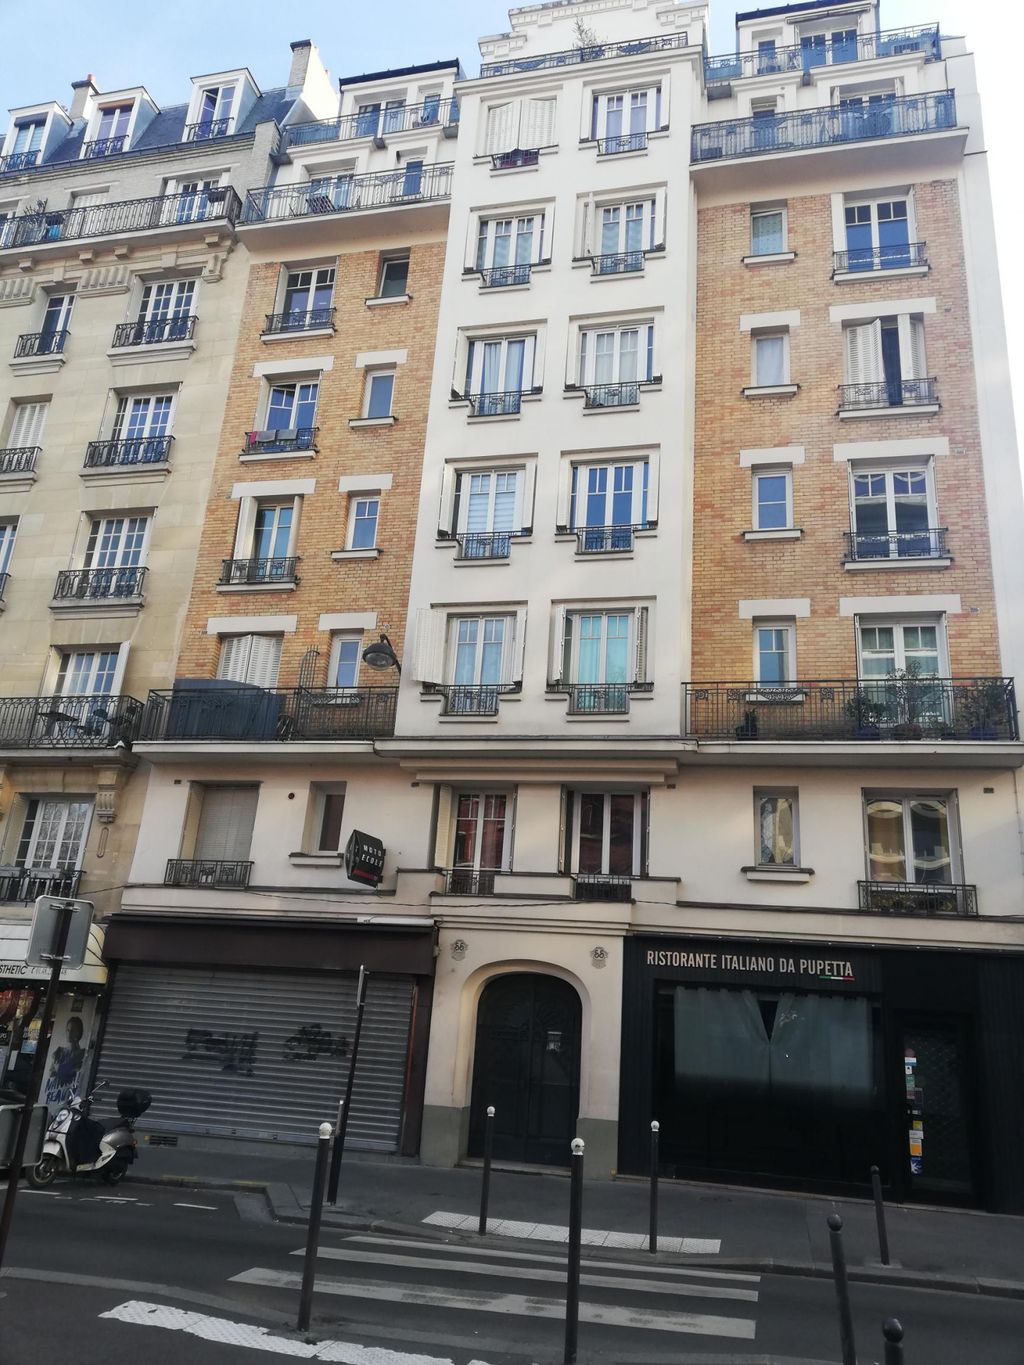 Achat studio à vendre 16 m² - Paris 15ème arrondissement